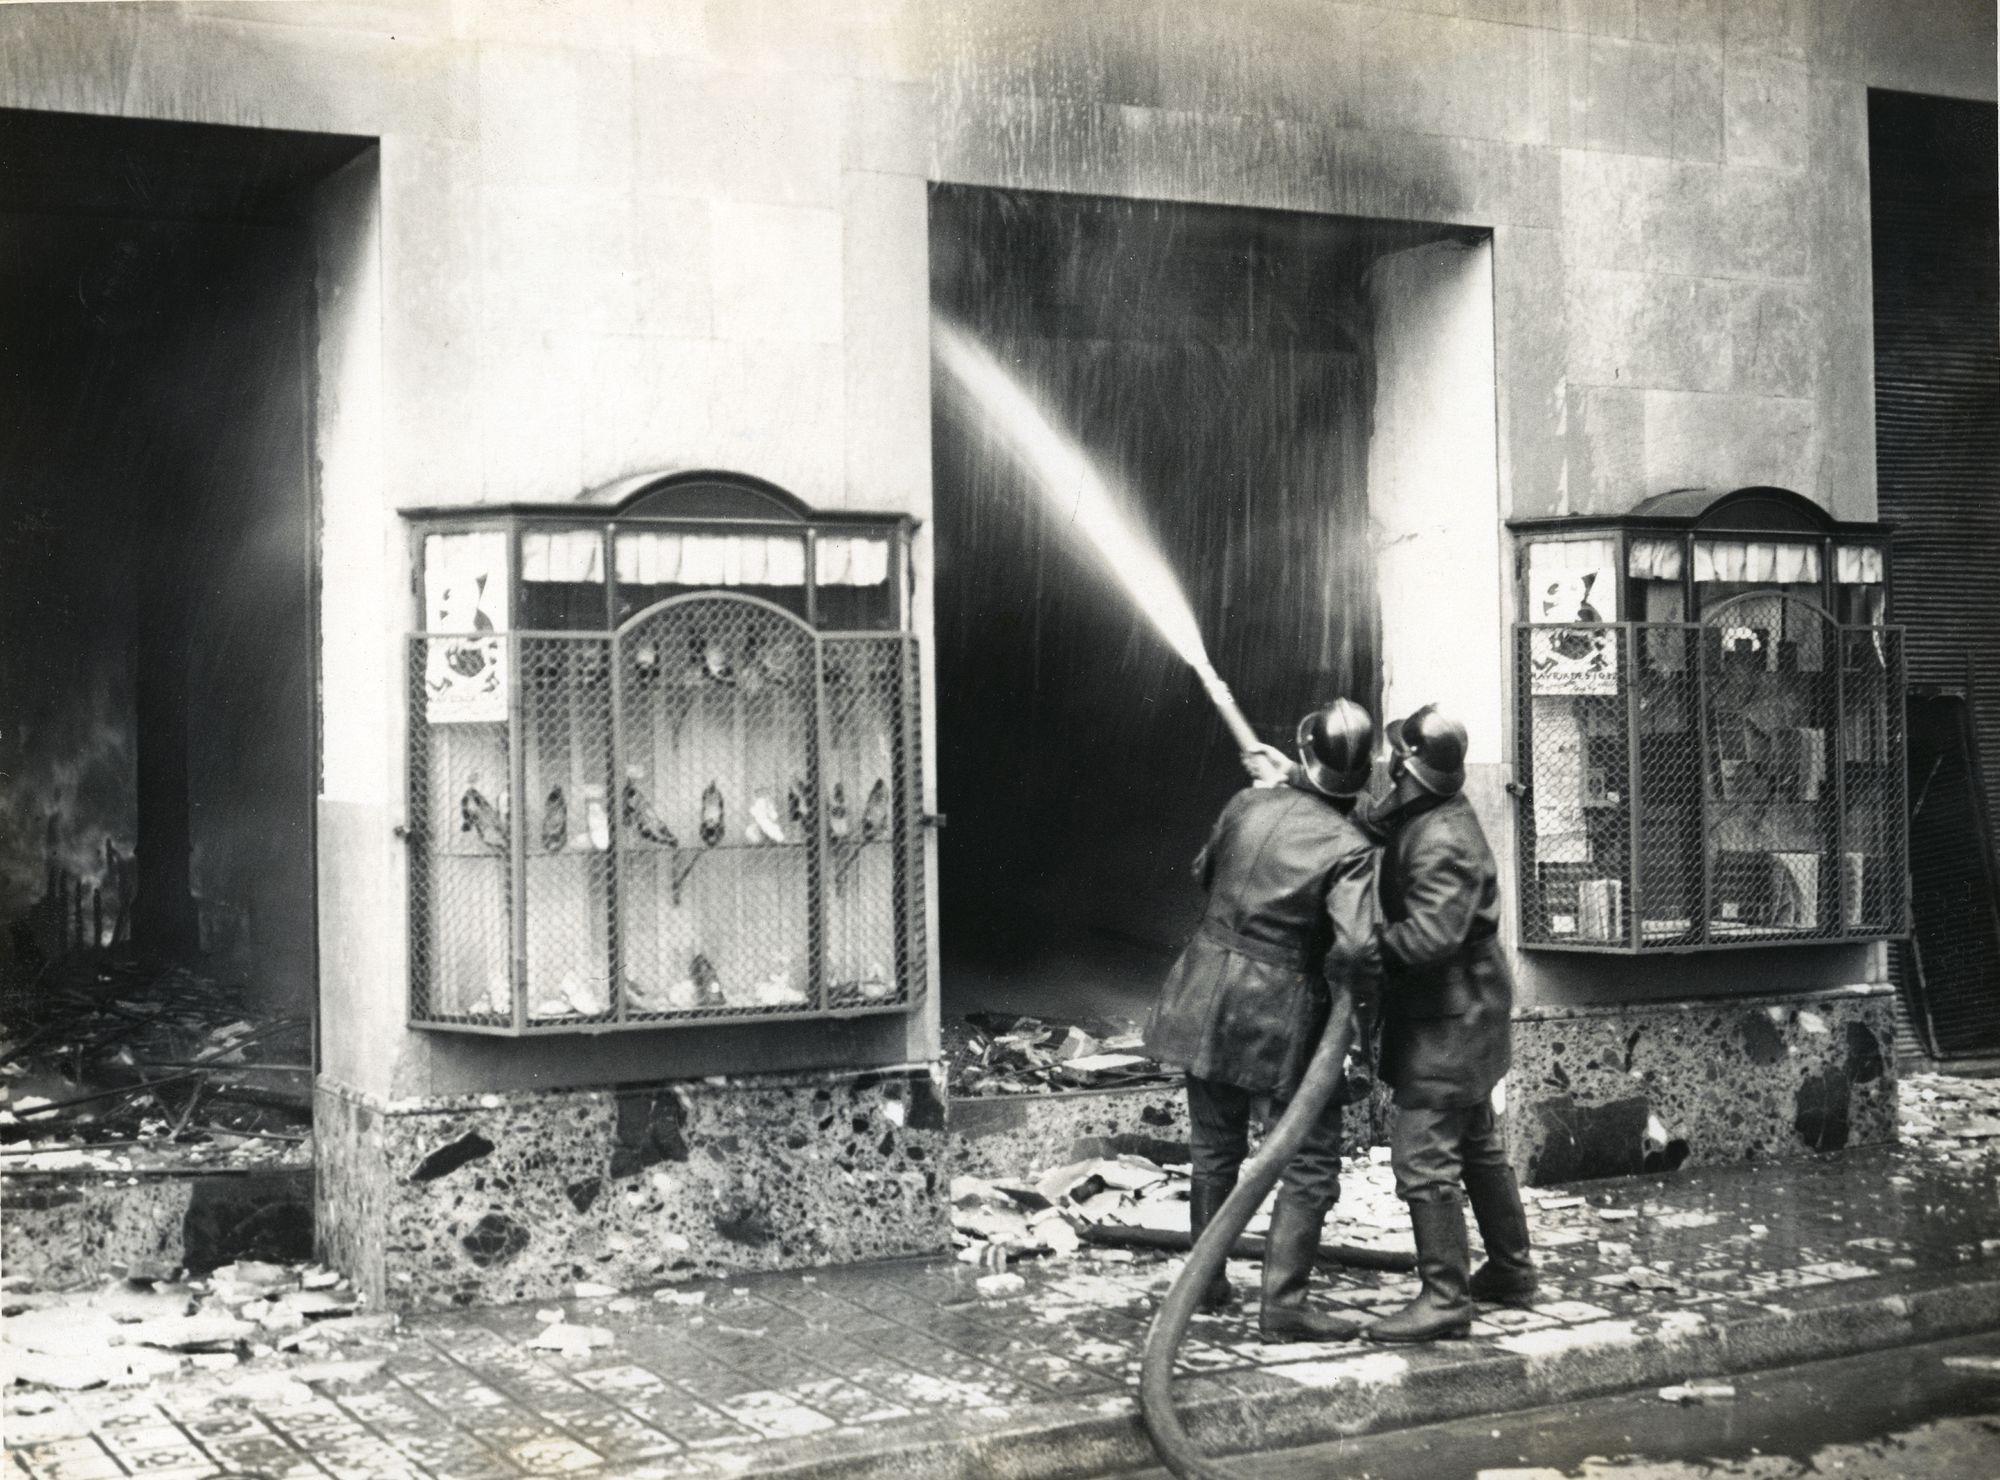 Bombers de Barcelona revisa el material d’extinció de al dipòsit d’obres de la Comissaria de Museusa a l’església de Sant Esteve d’Olot, novembre 1936